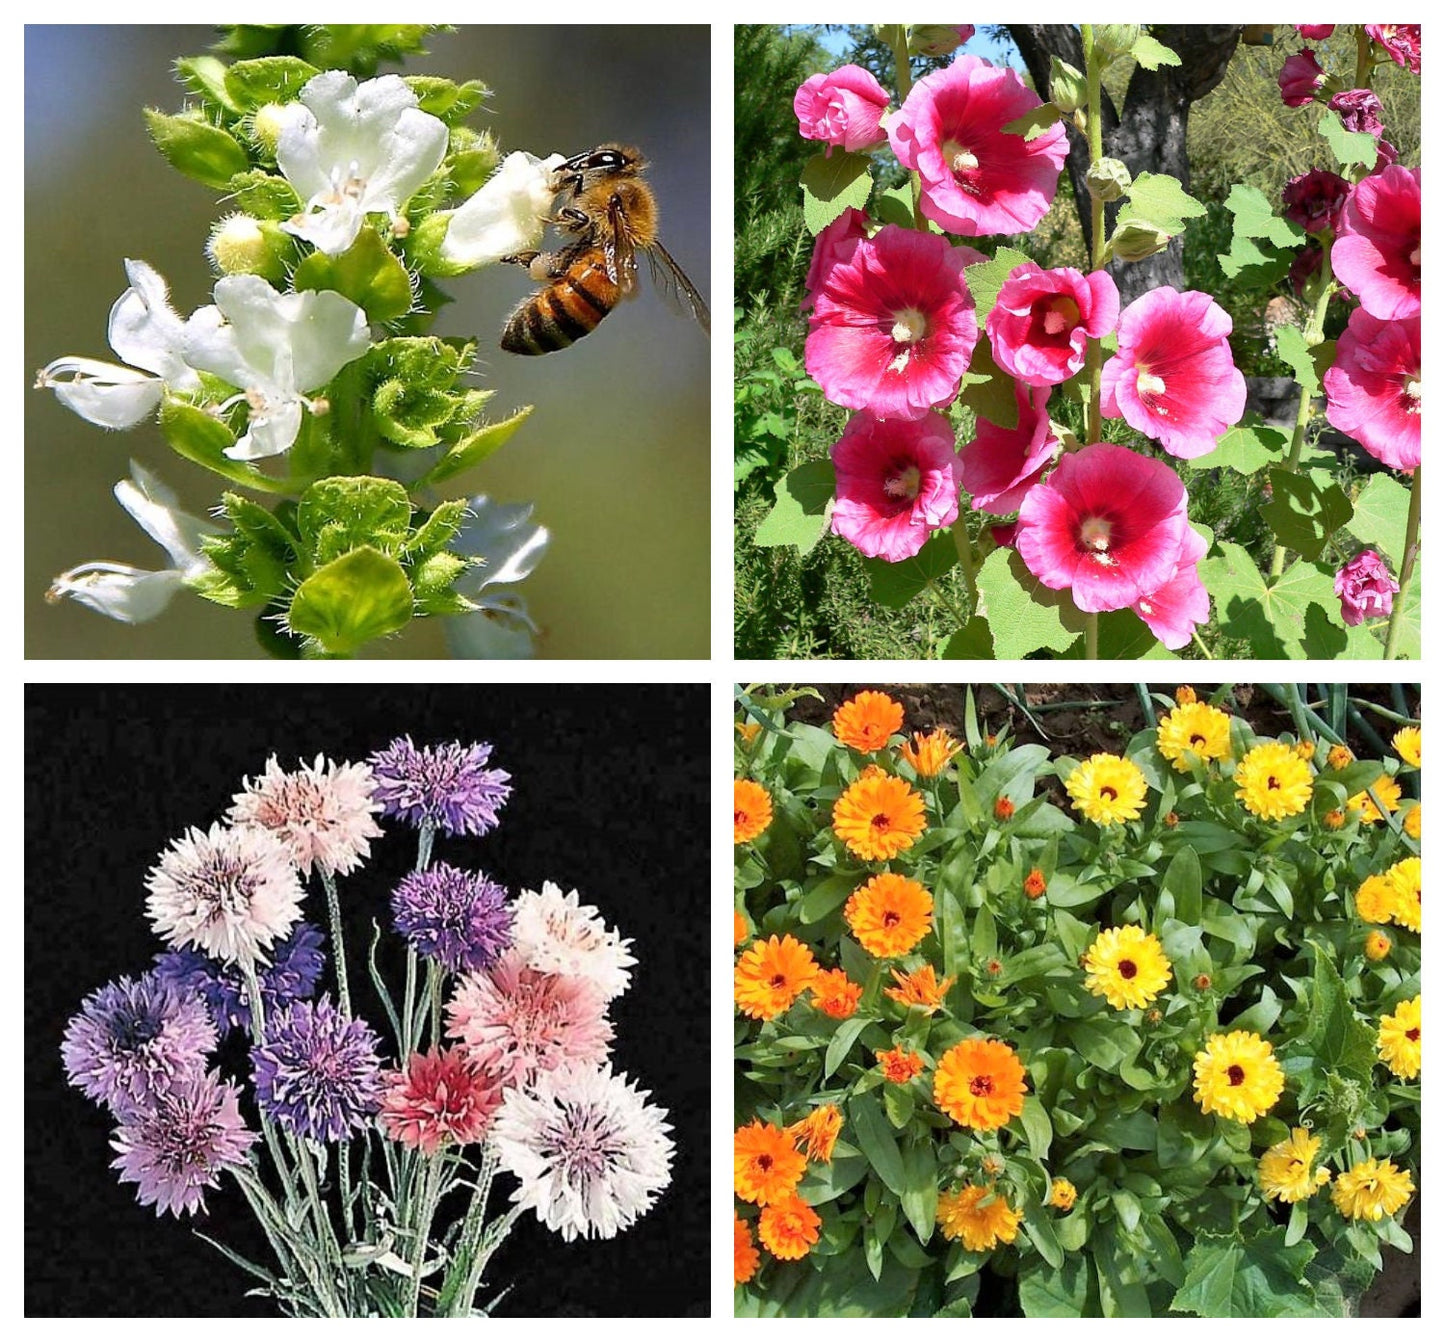 EDIBLE FLOWER MIX Seeds - 16 Types: Marigold Daisy Viola Safflower Alyssum Hyssop Hollyhock Cornflower Sweet William Nasturtium Basil + More